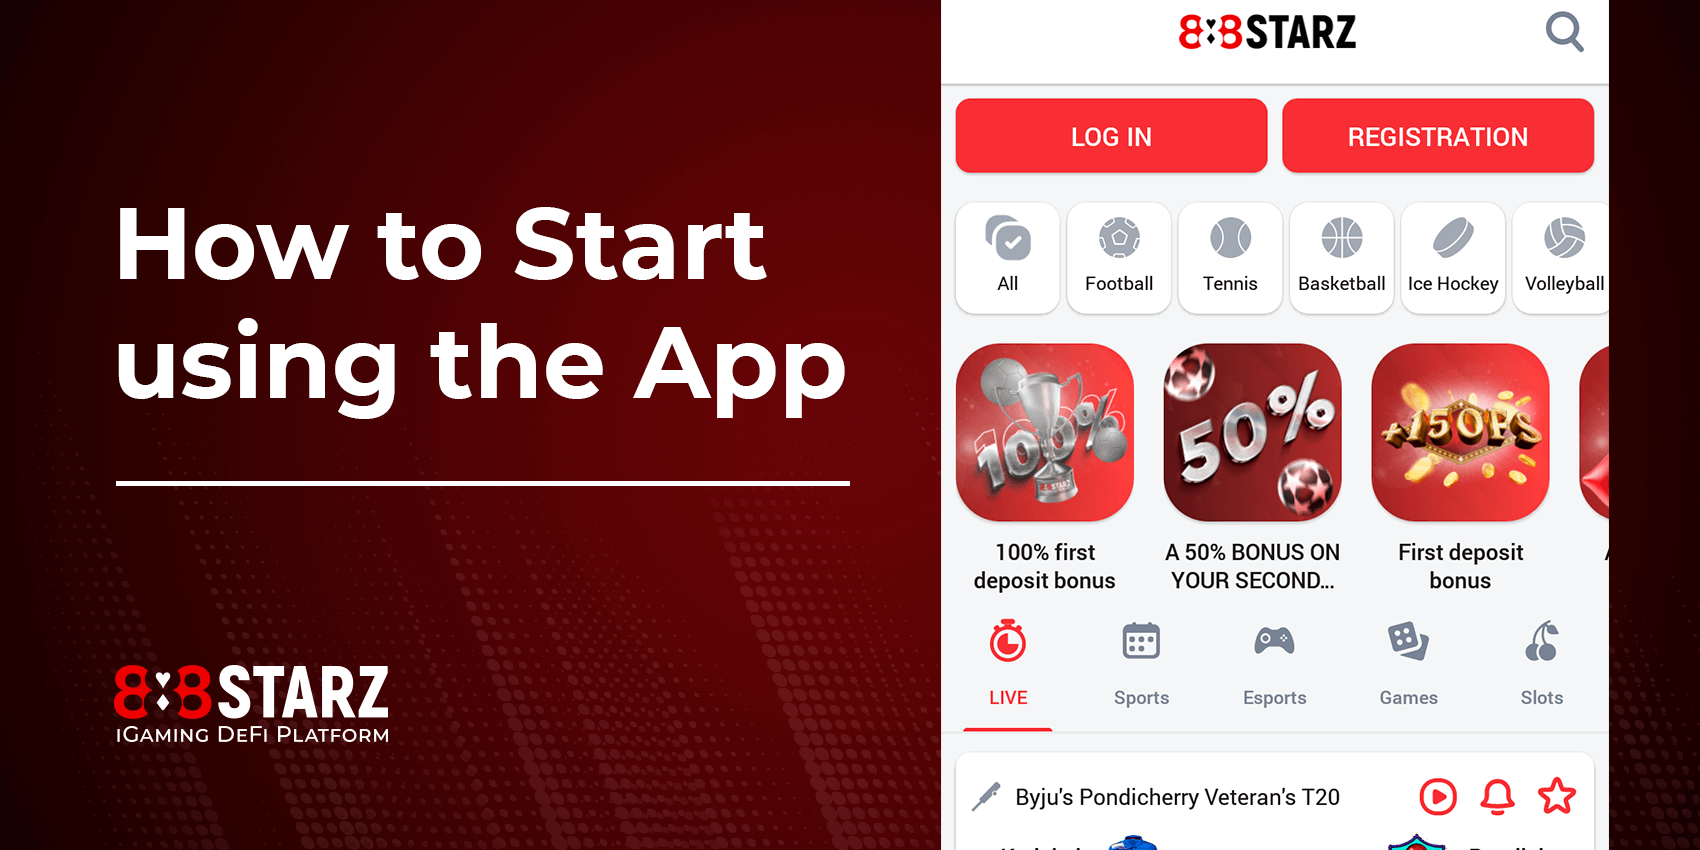 ¿Cómo empezar a usar la aplicación 888Starz?